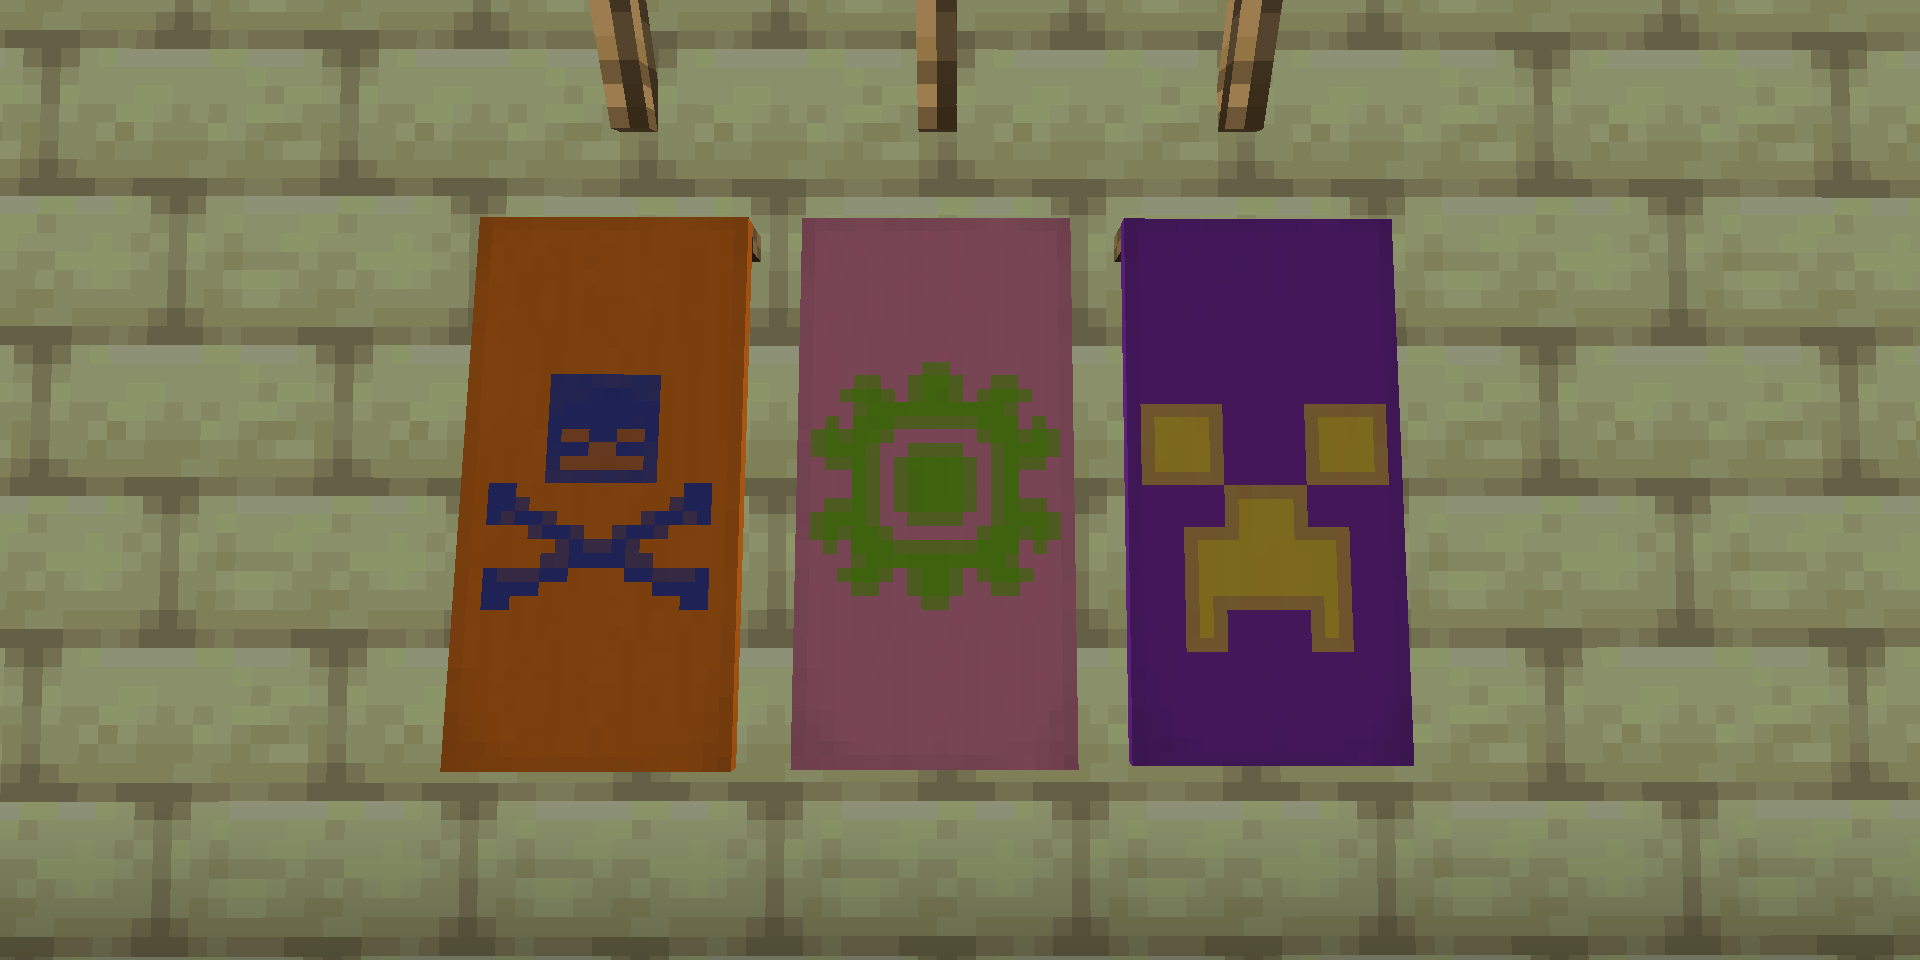 Some banner designs in Minecraft